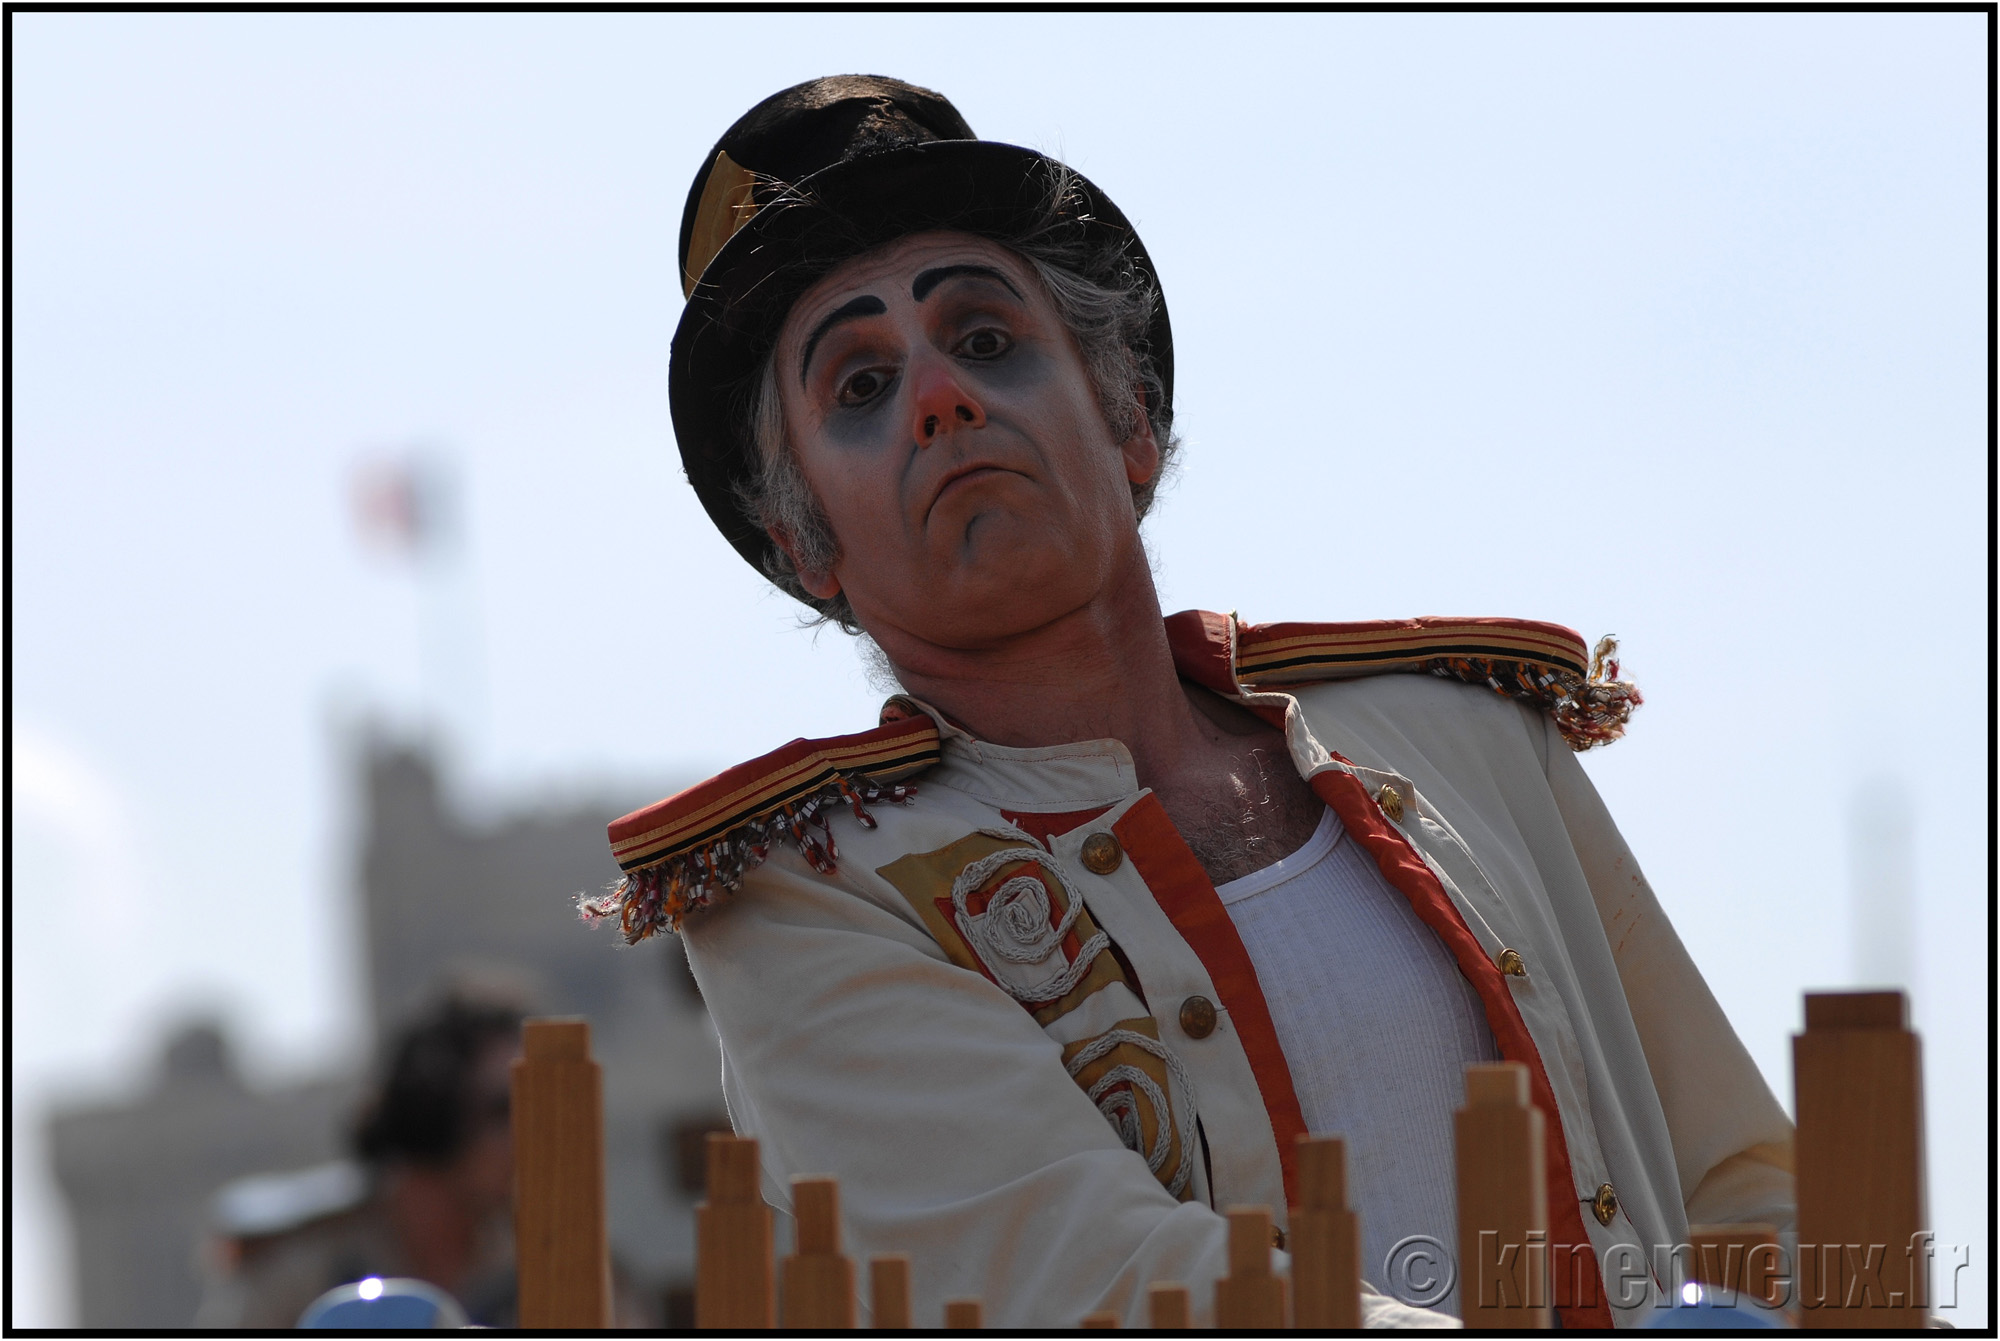 kinenveux_41_carnaval2015lr.jpg - Carnaval des Enfants 2015 - La Rochelle